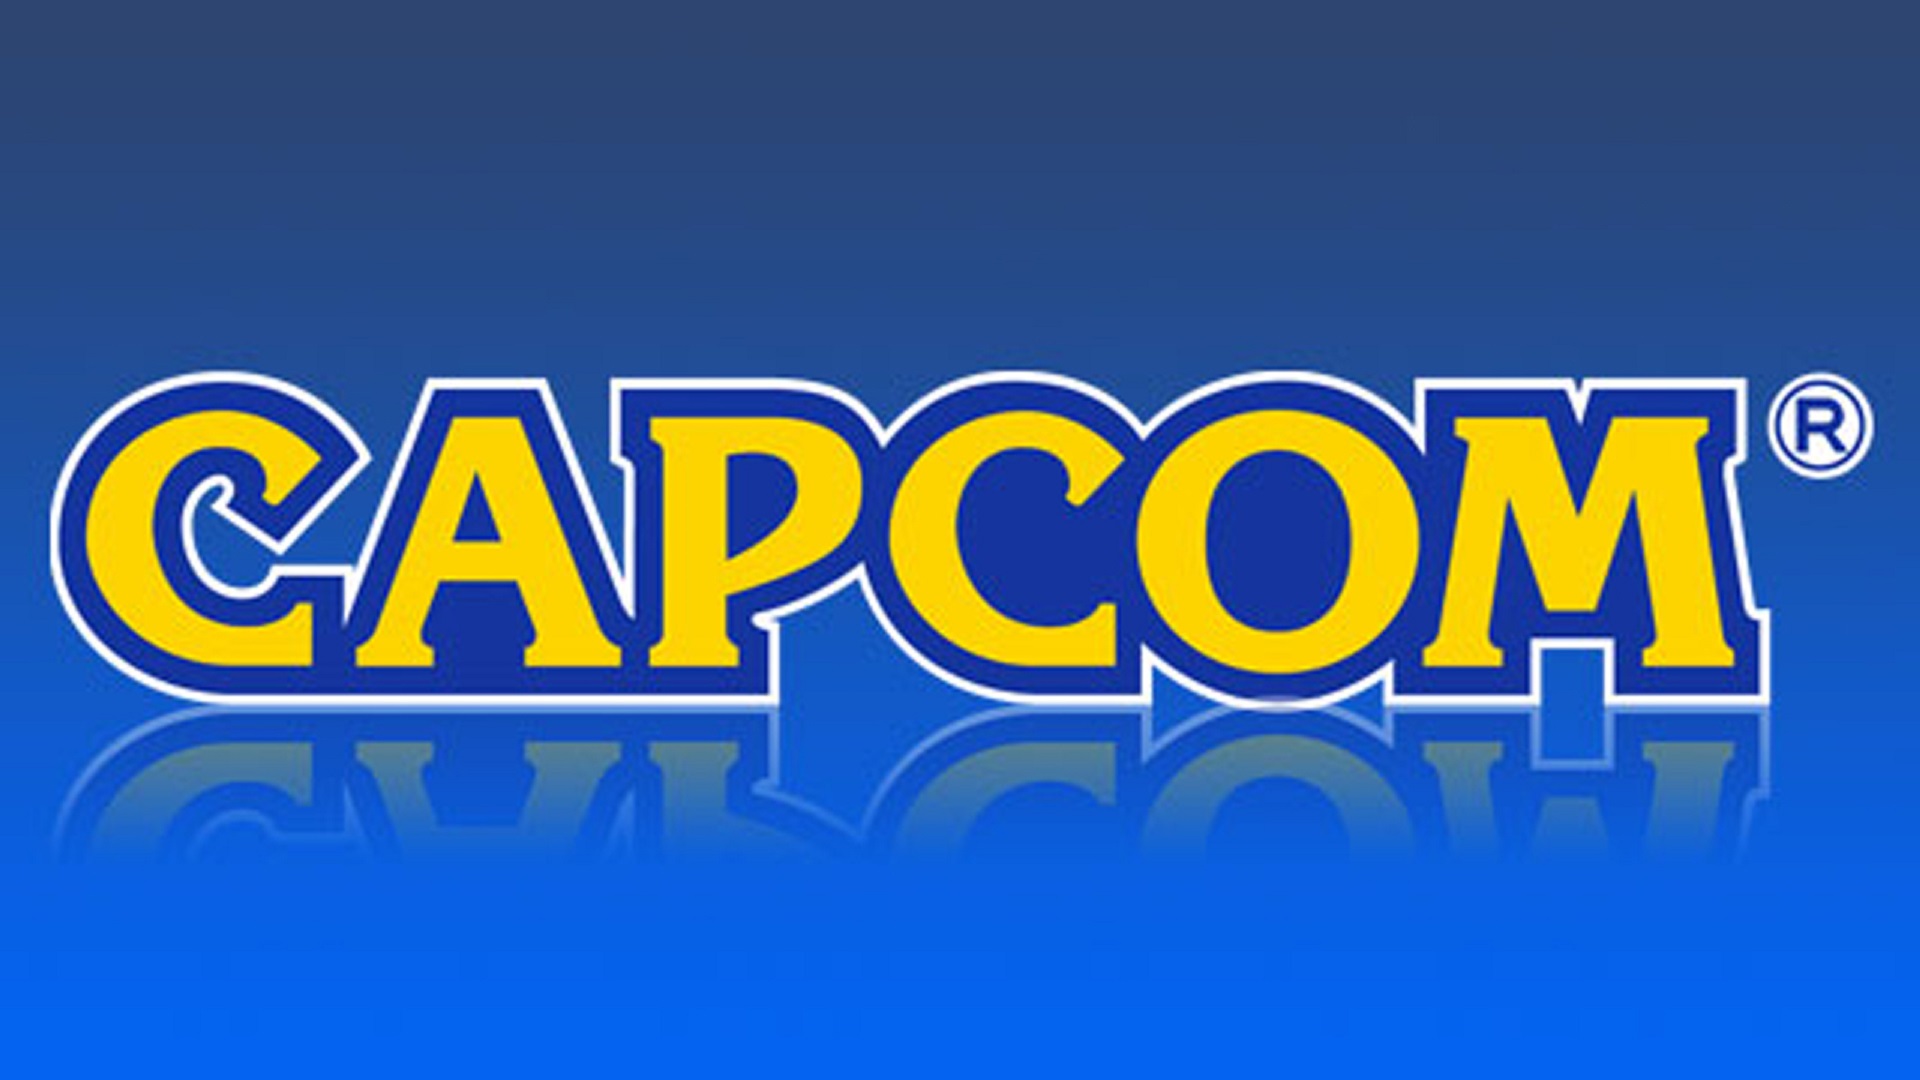 Capcom: Comienza el sÃ¡bado ahorrando con todos estos juegos japoneses